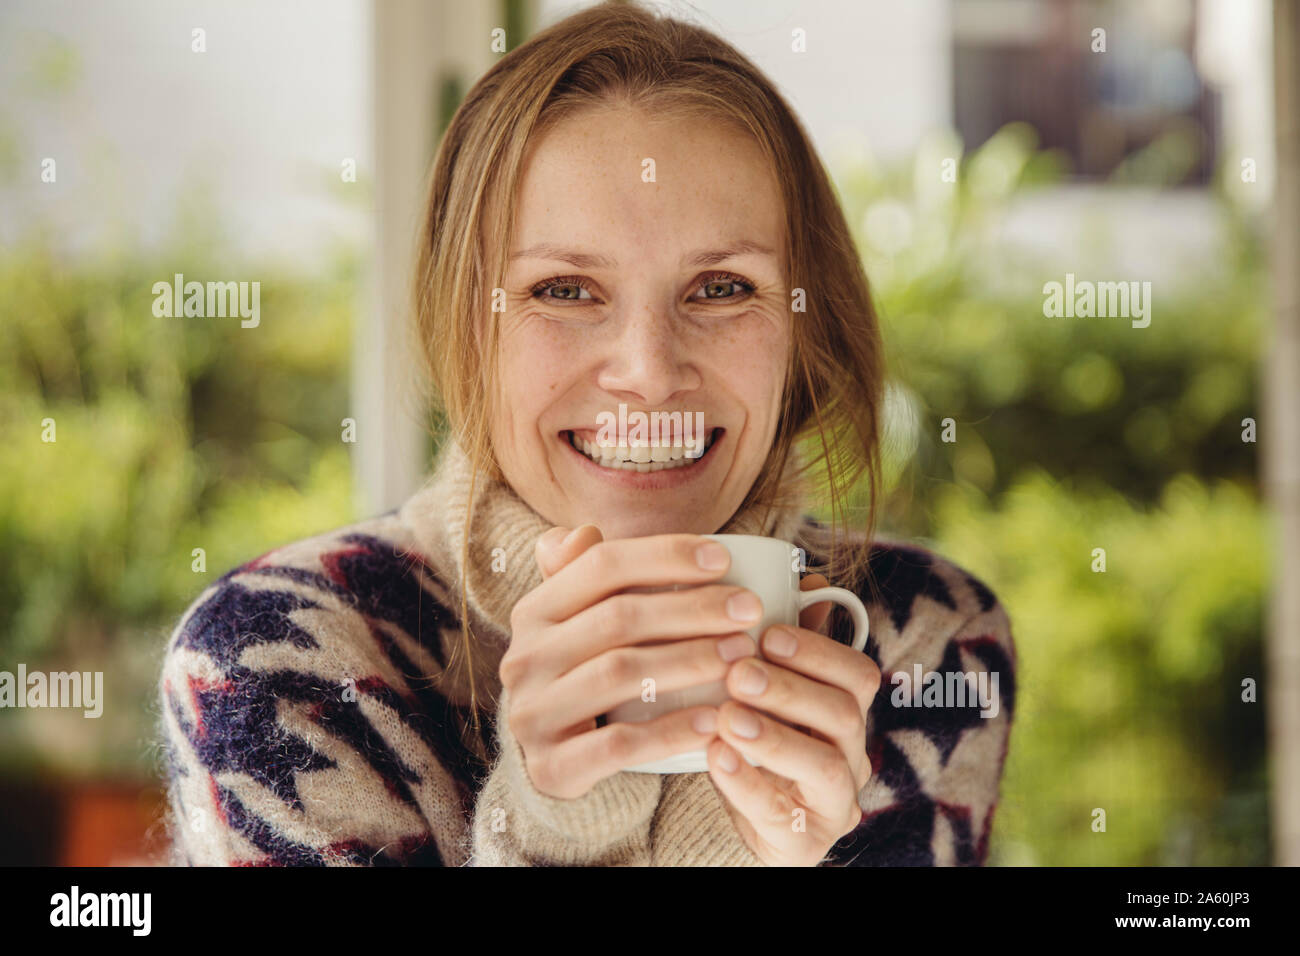 Retrato de mujer sonriente vistiendo un suéter esponjoso sosteniendo una taza Foto de stock